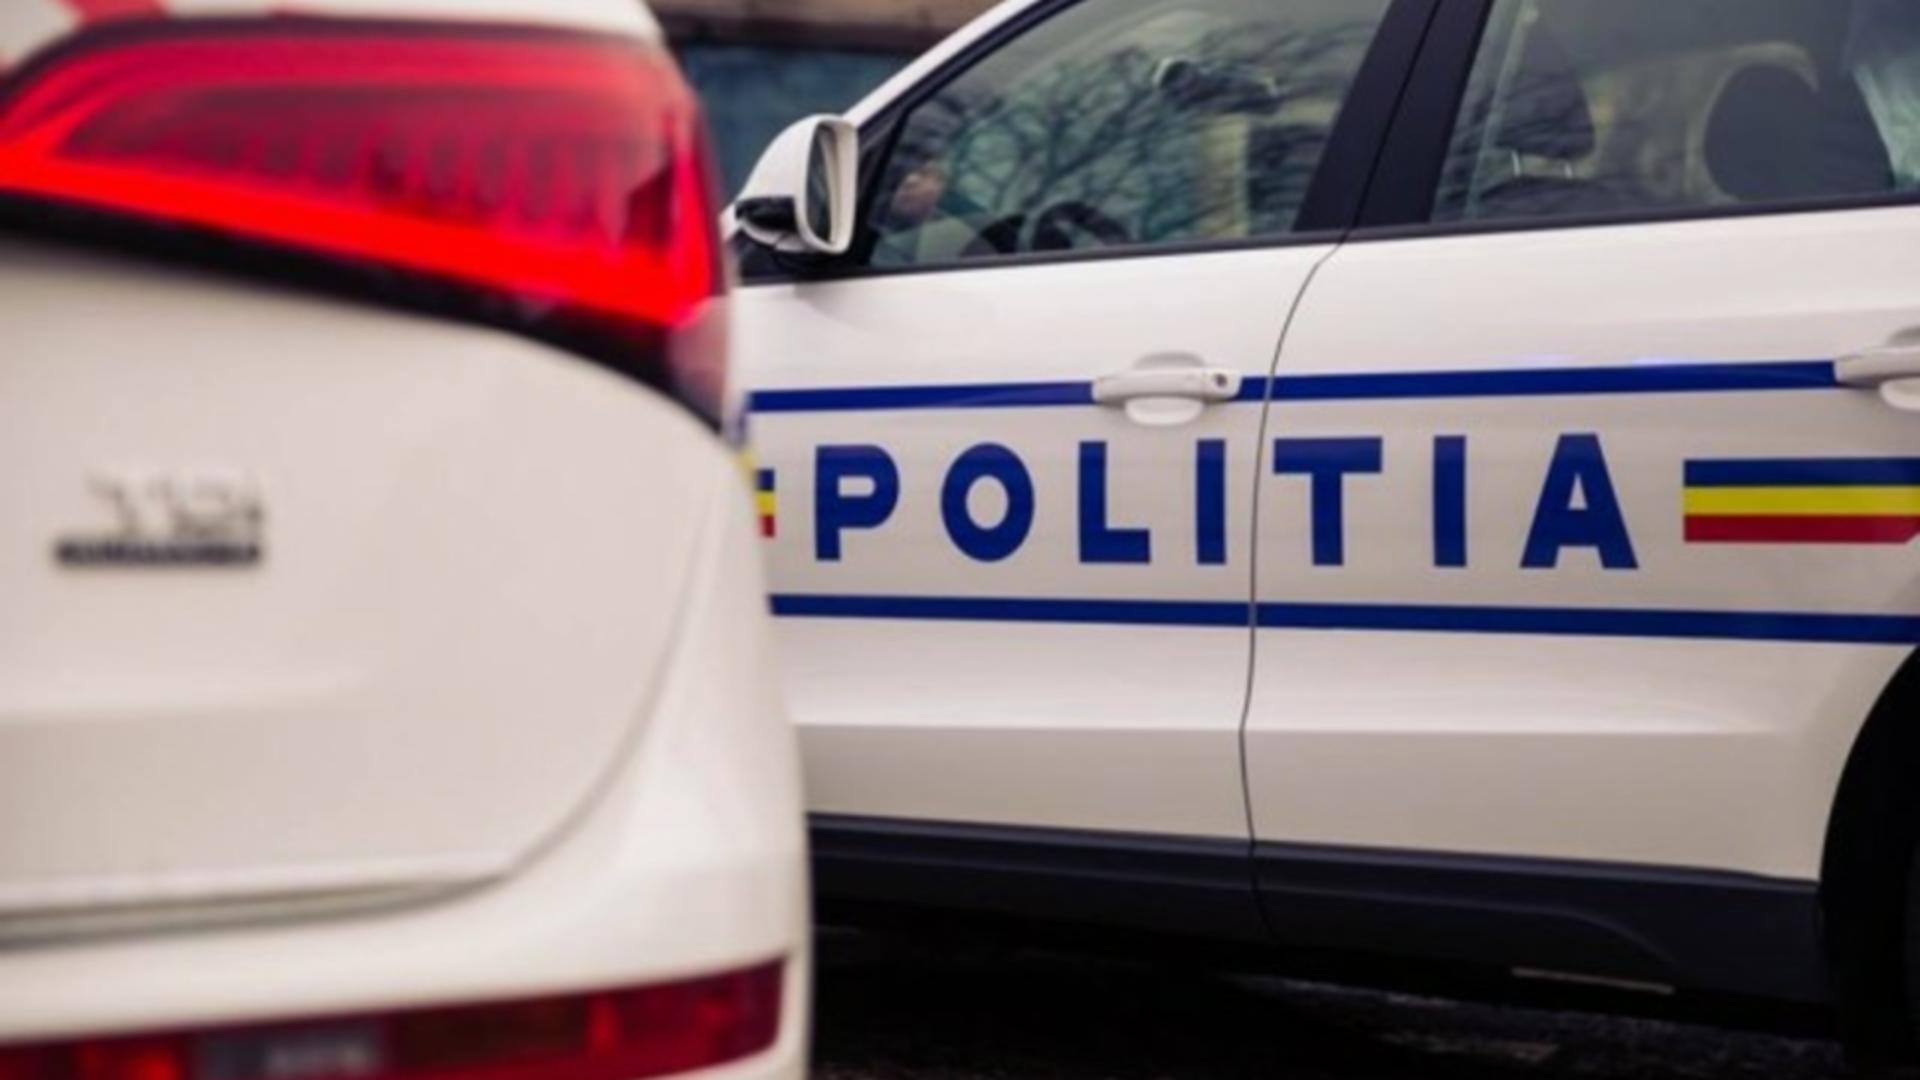 Angajat al uzinei Dacia Mioveni, găsit spânzurat într-o hală! Poliția și ITM au deschis o anchetă